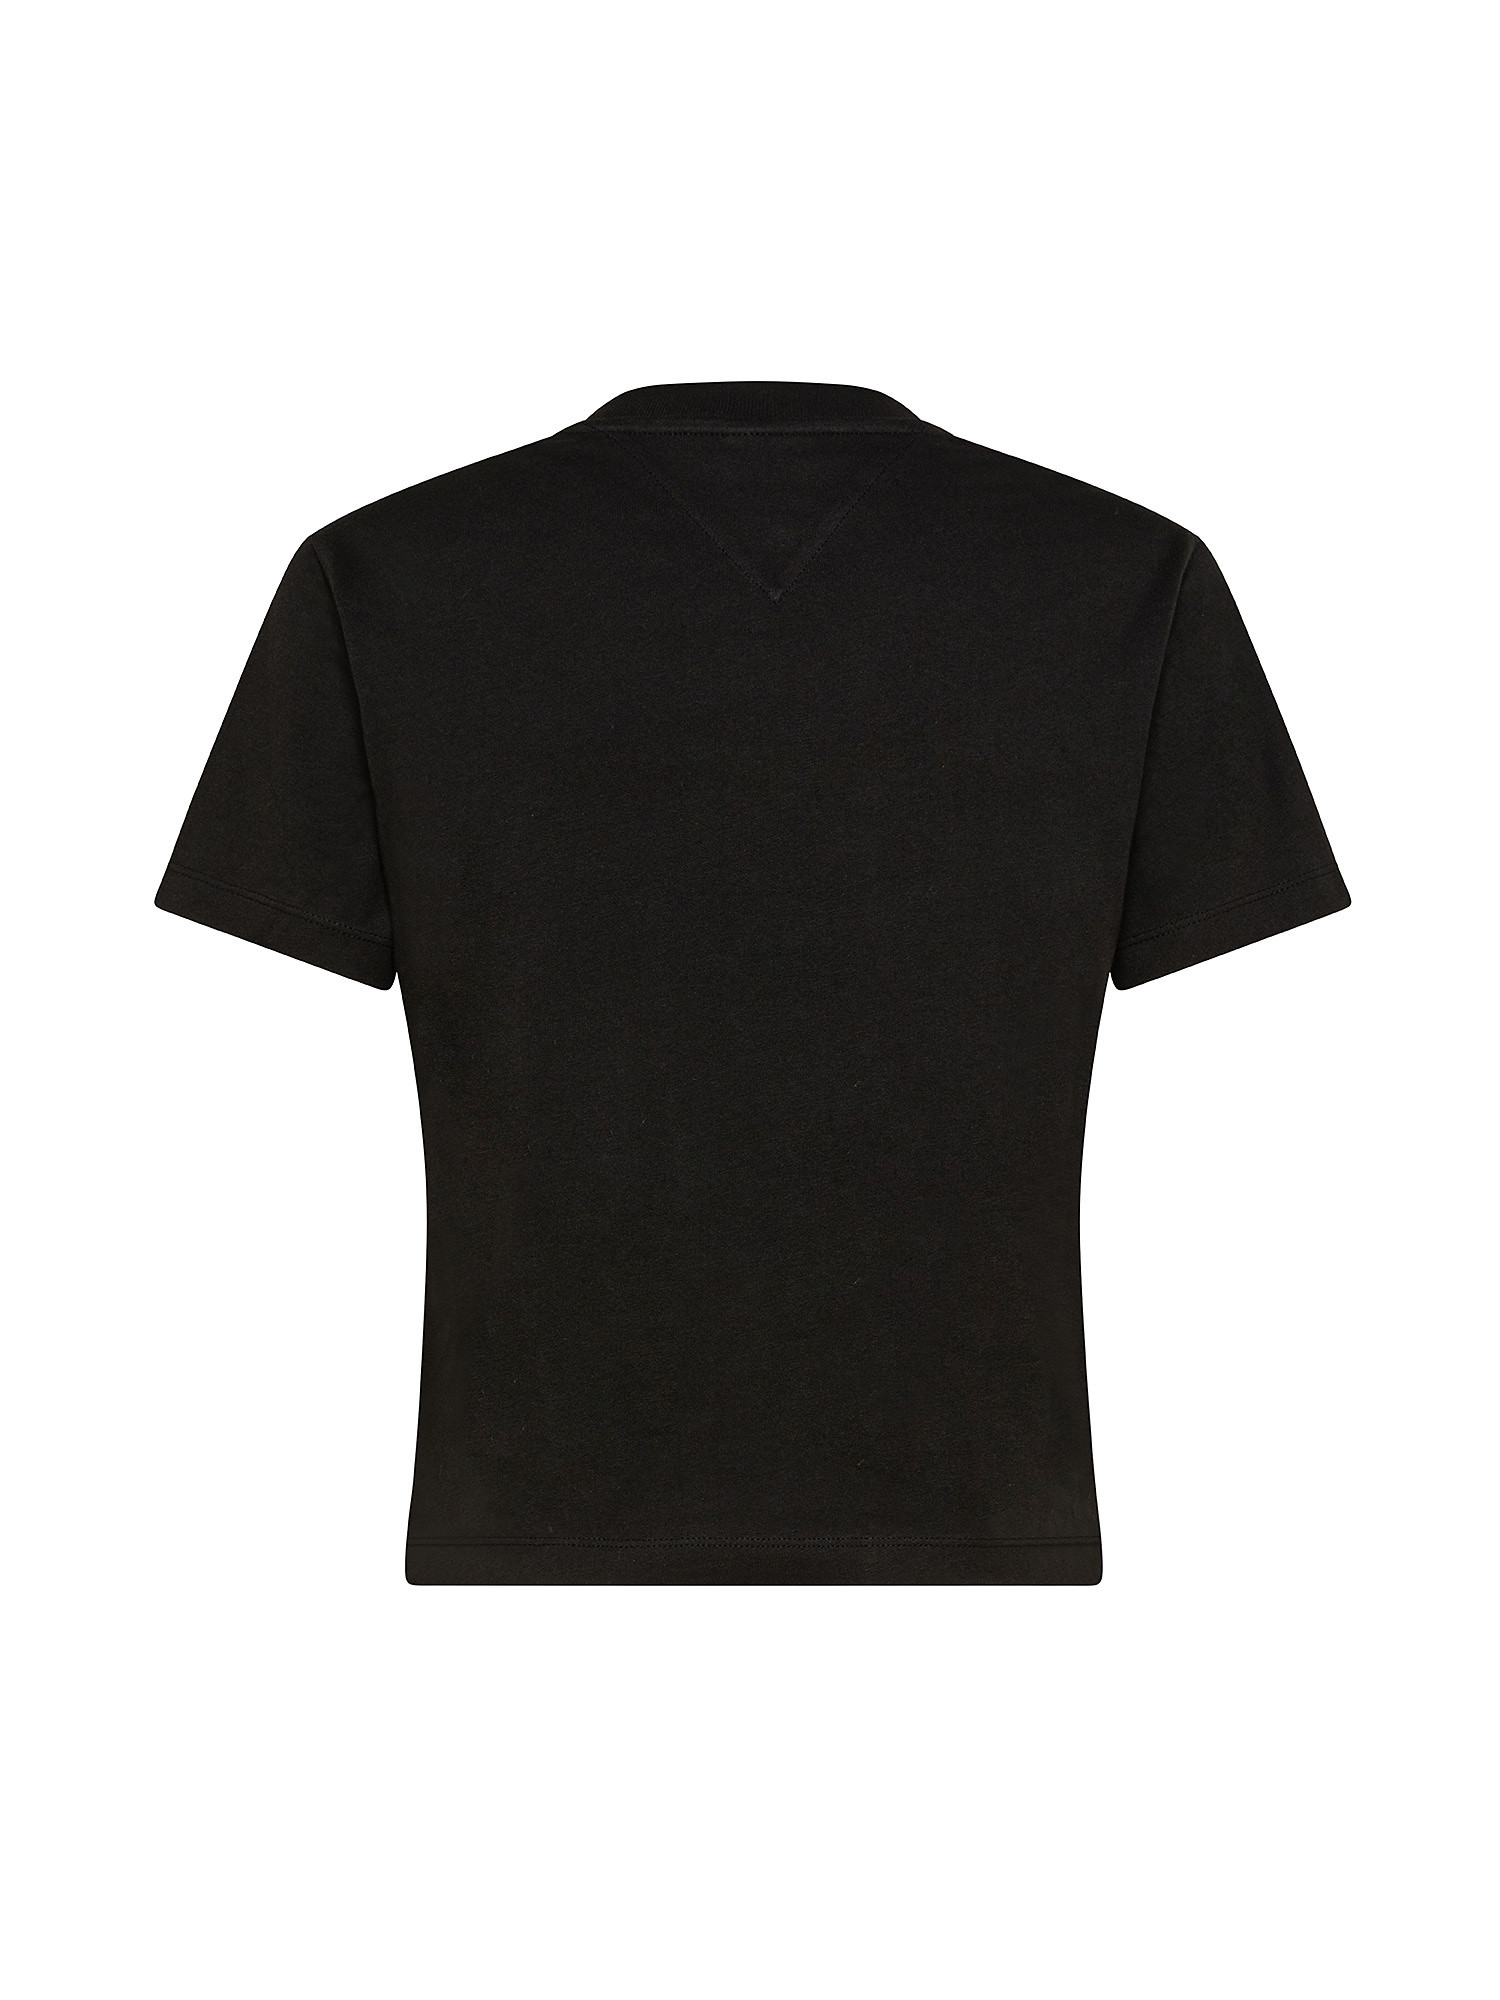 T-shirt con logo ricamato, BLACK, large image number 1